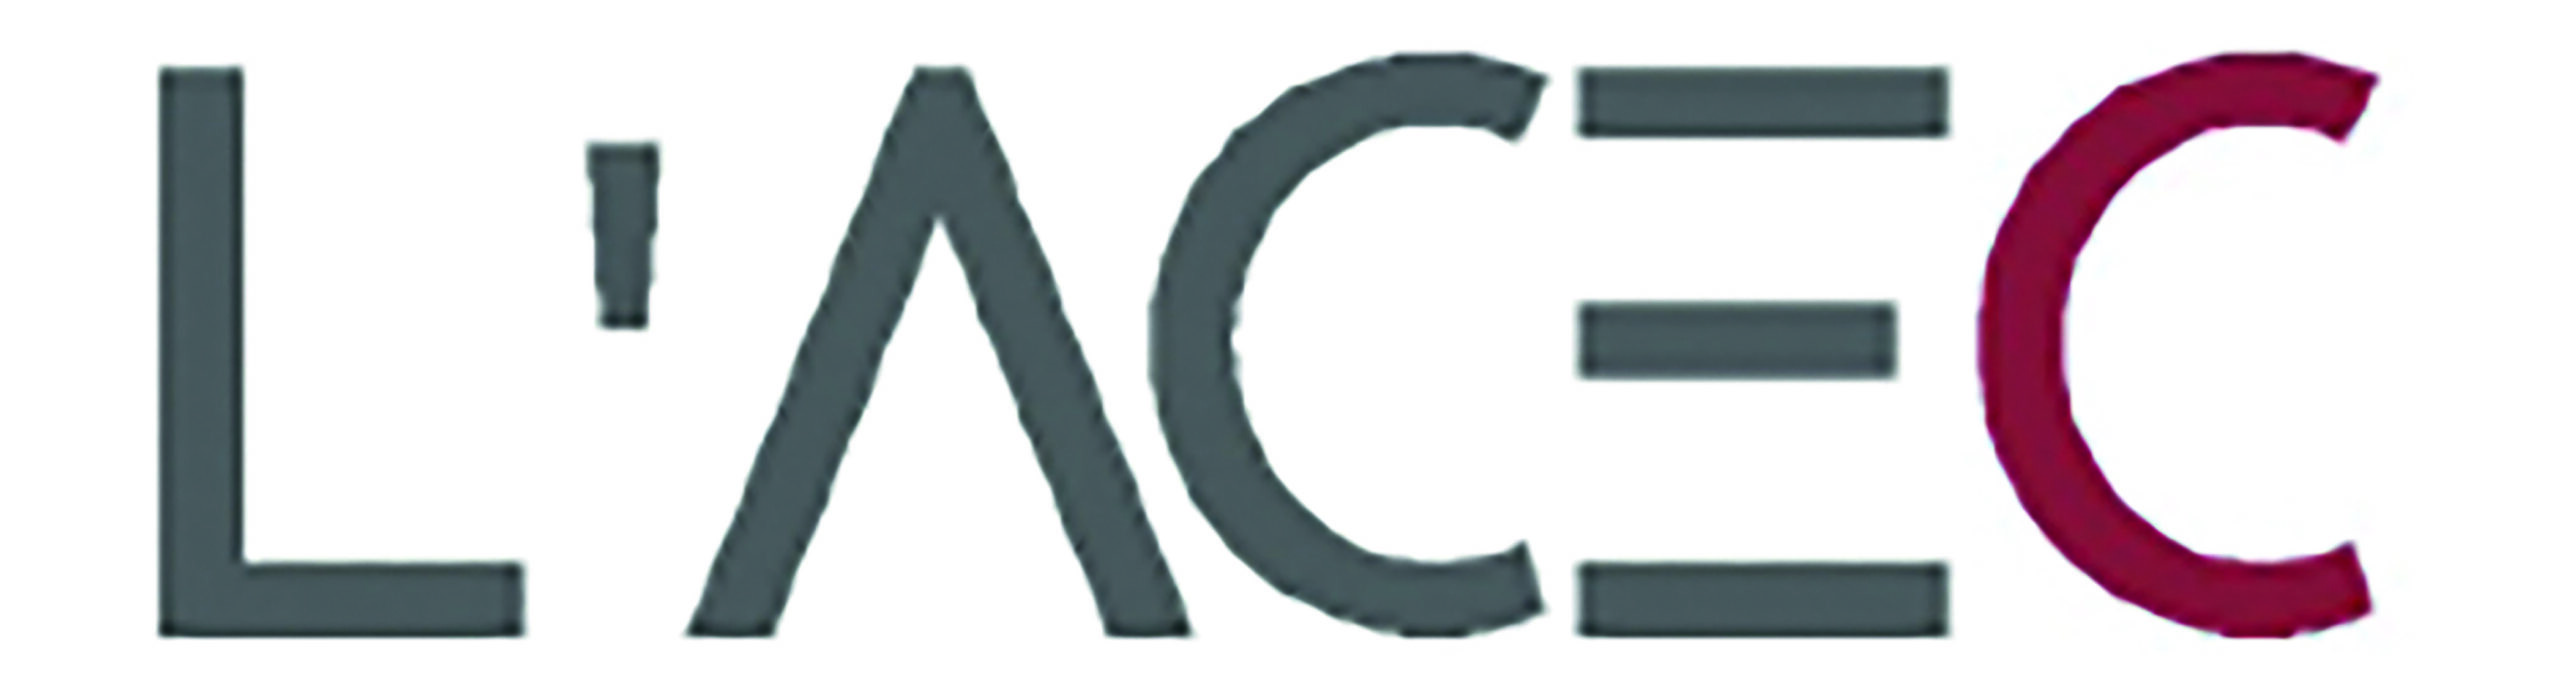 Logo ACEC